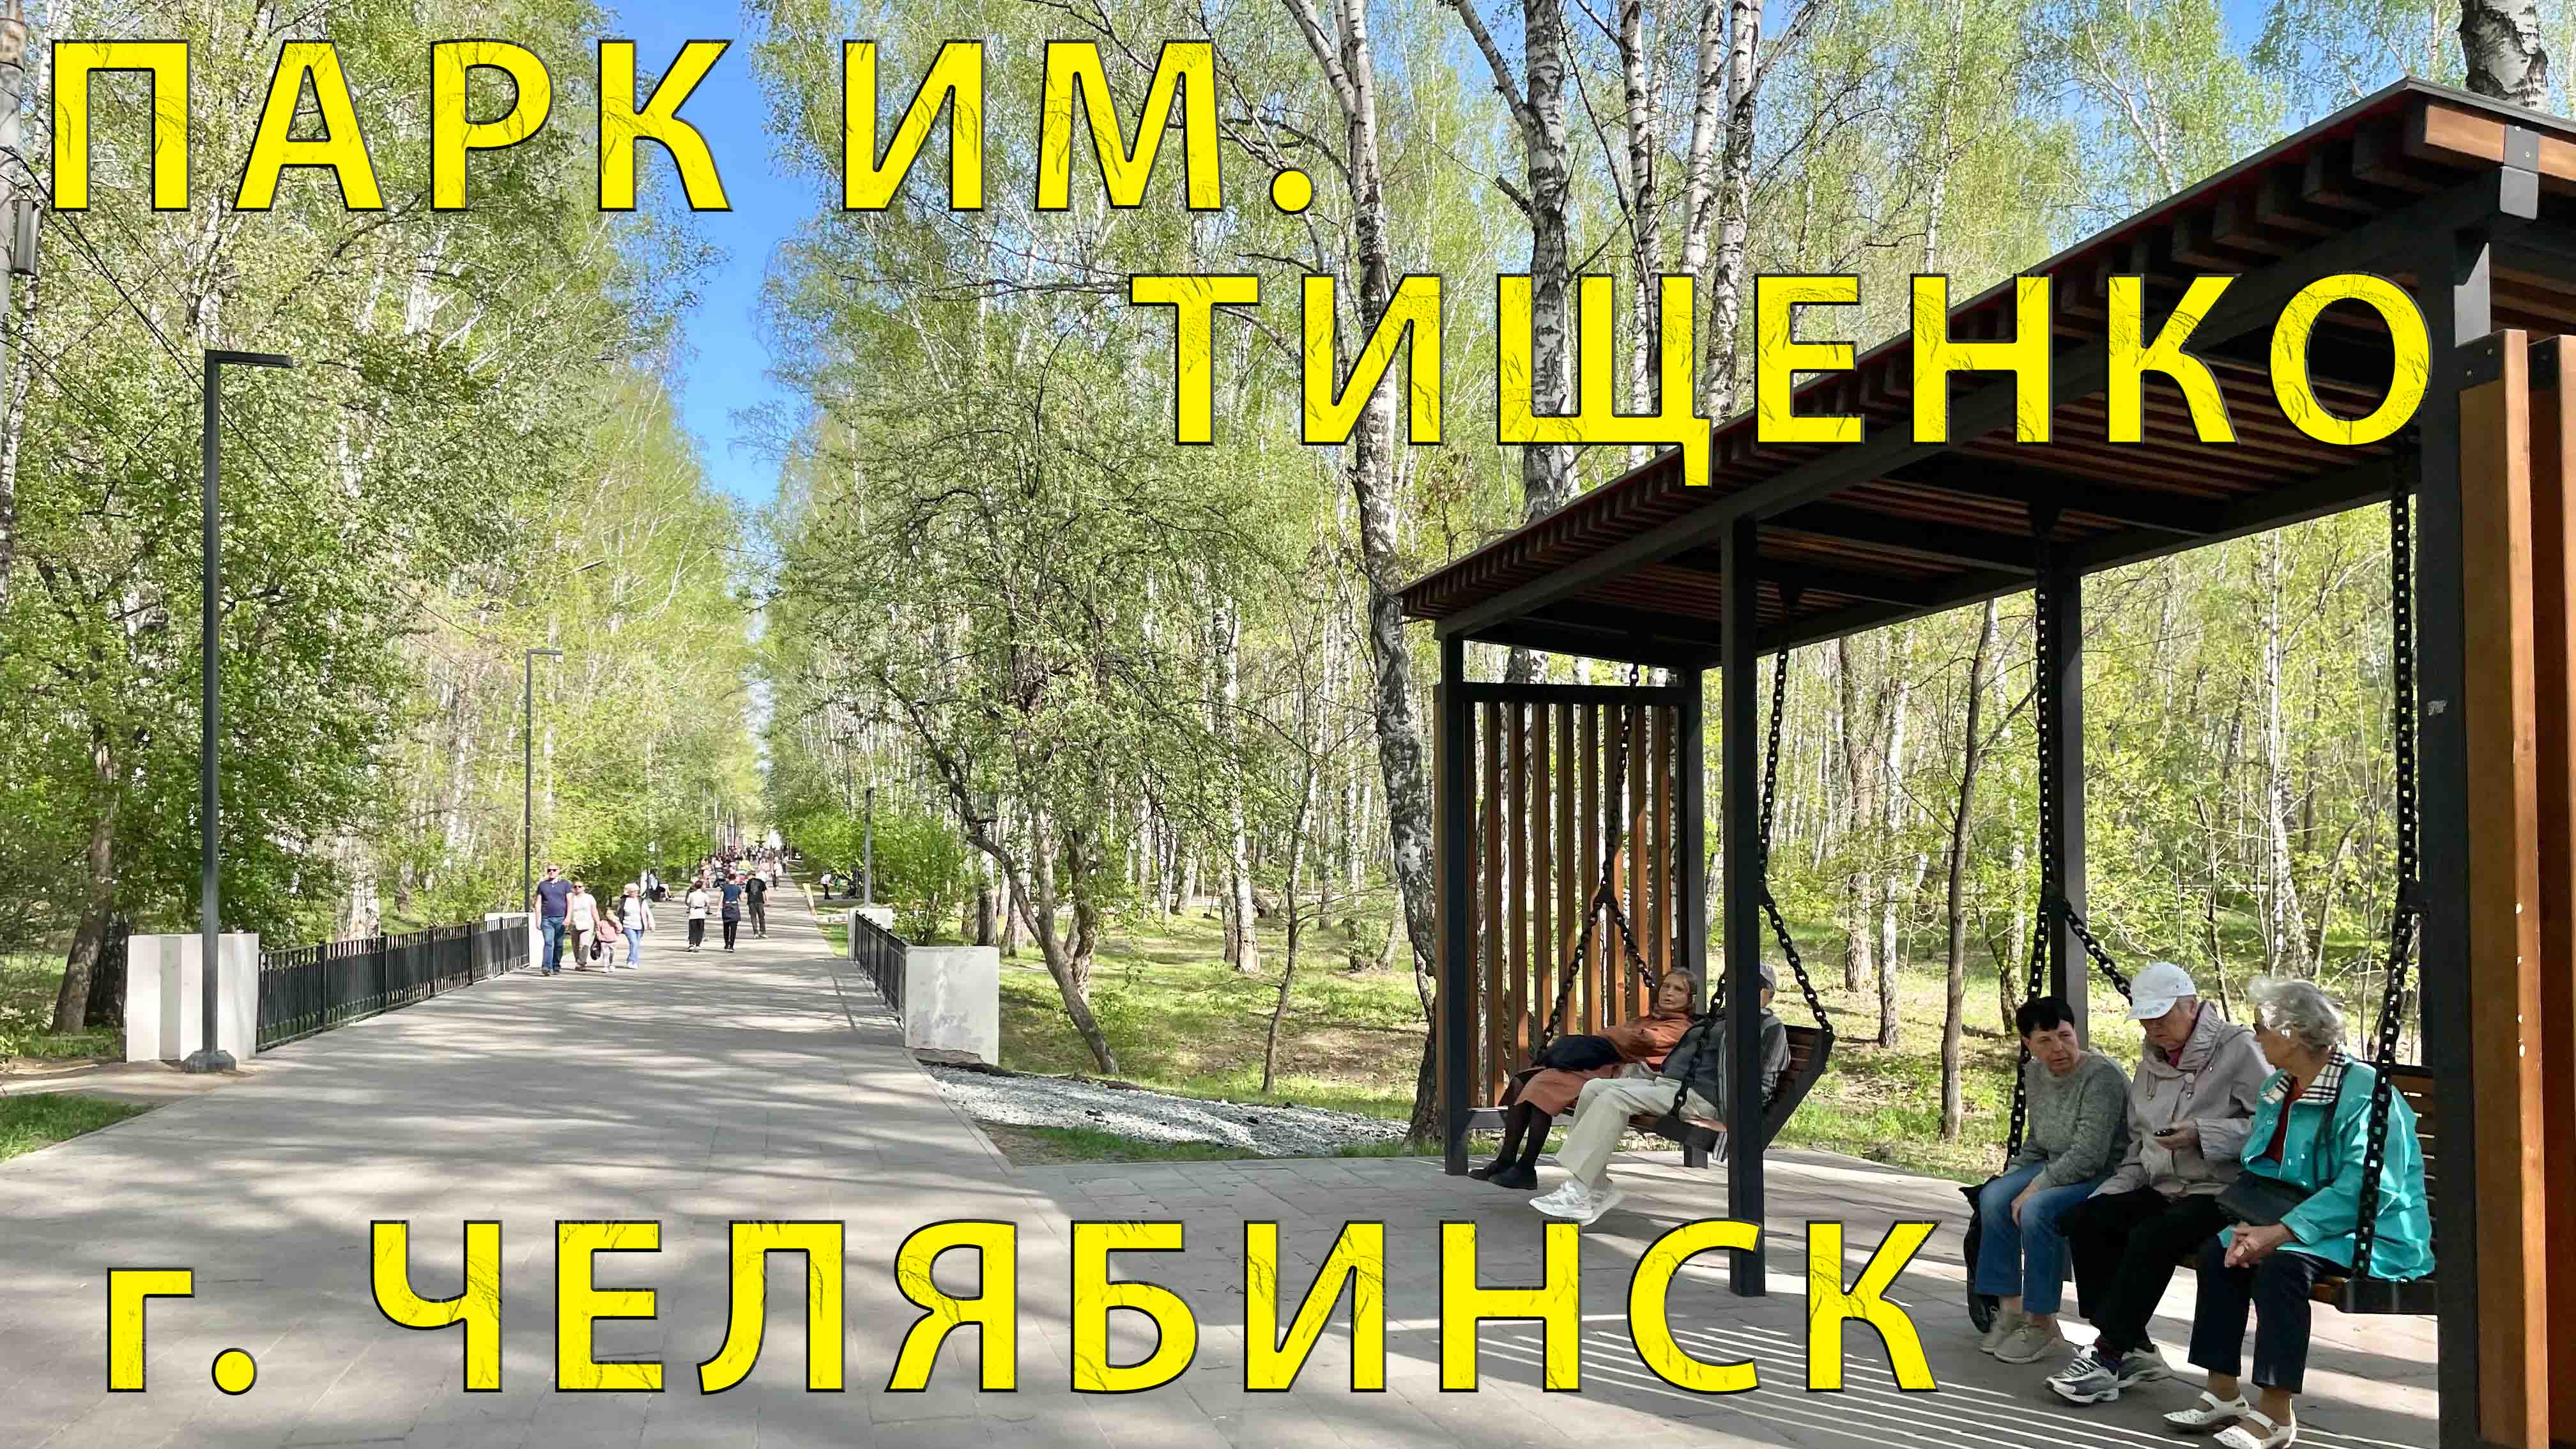 Прогулка (обзор) Парка им. Тищенко в г. Челябинск 05.2023 г.